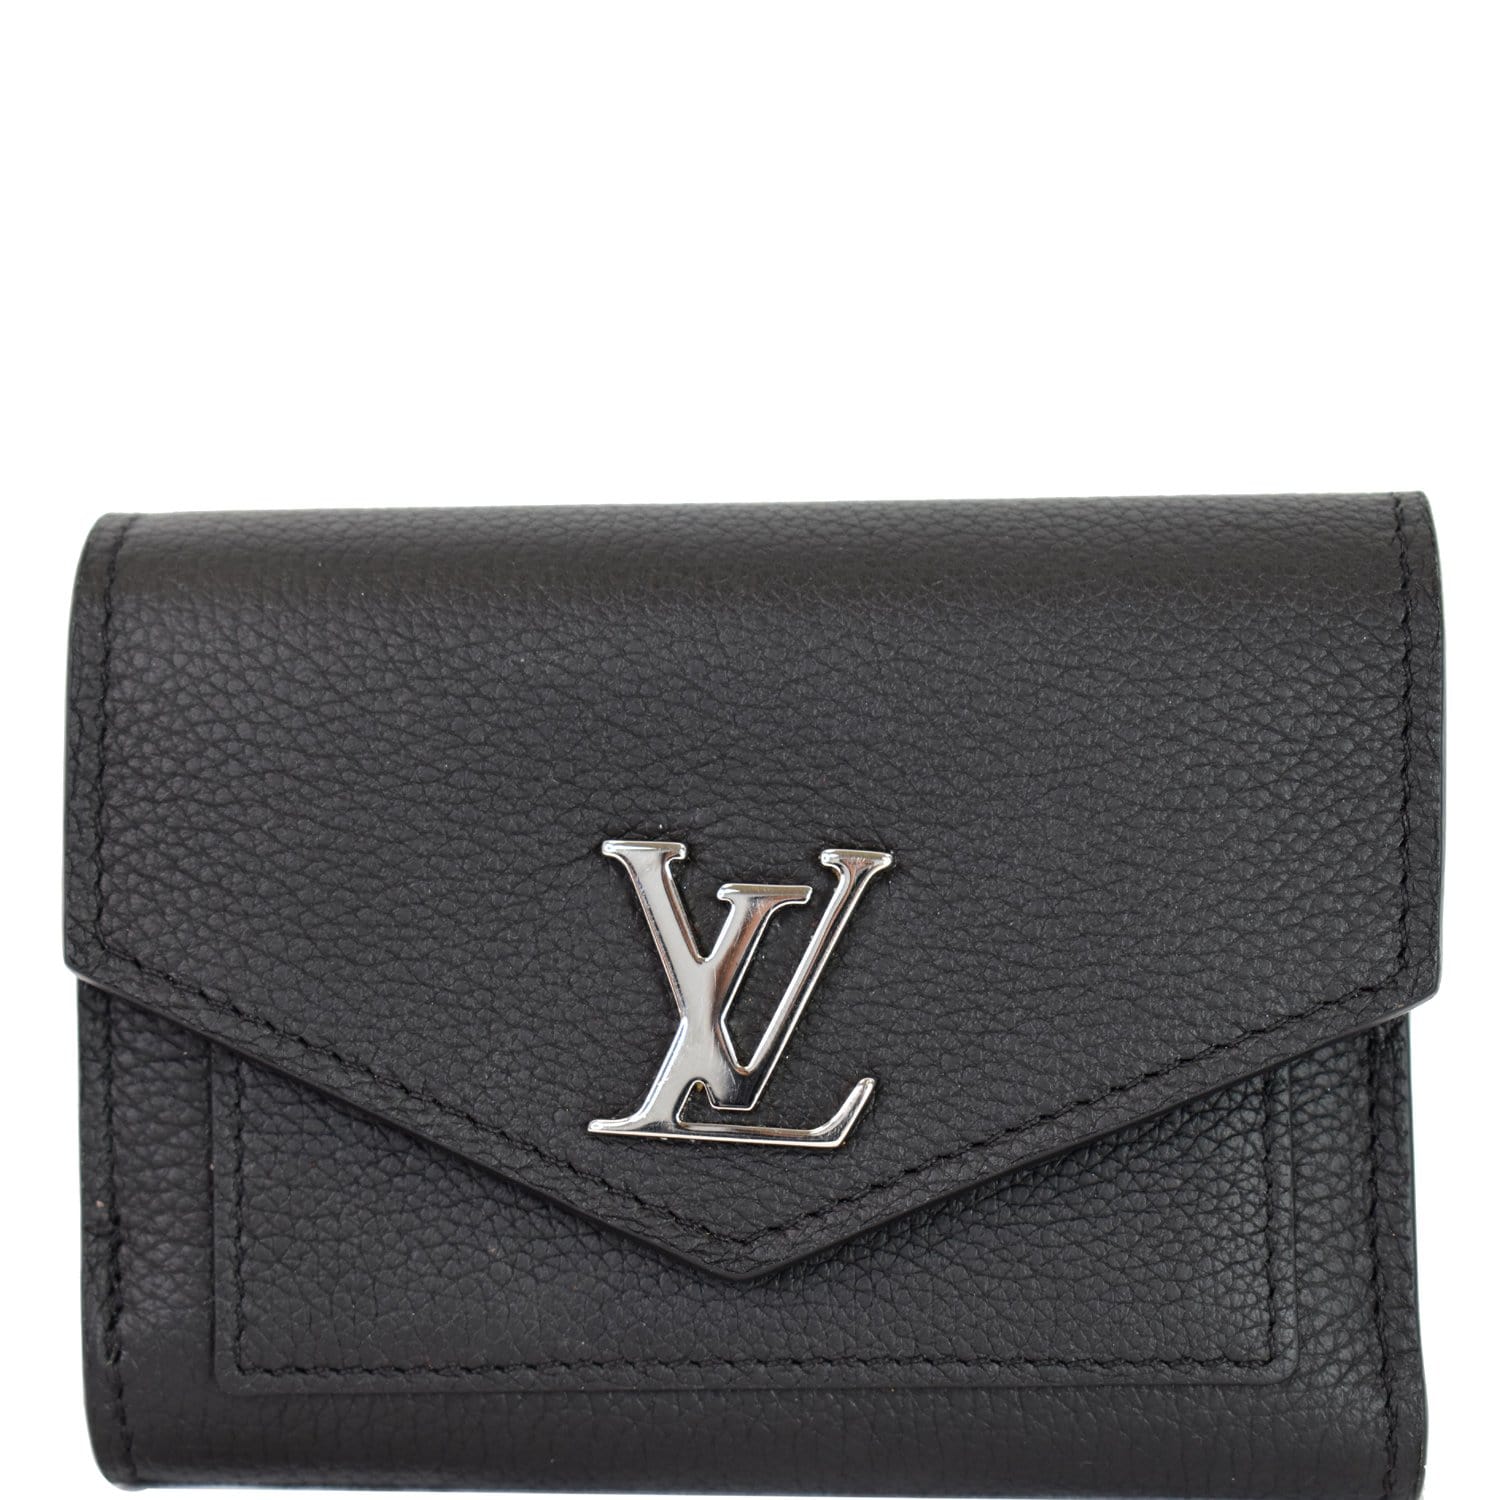 lv black wallet for women